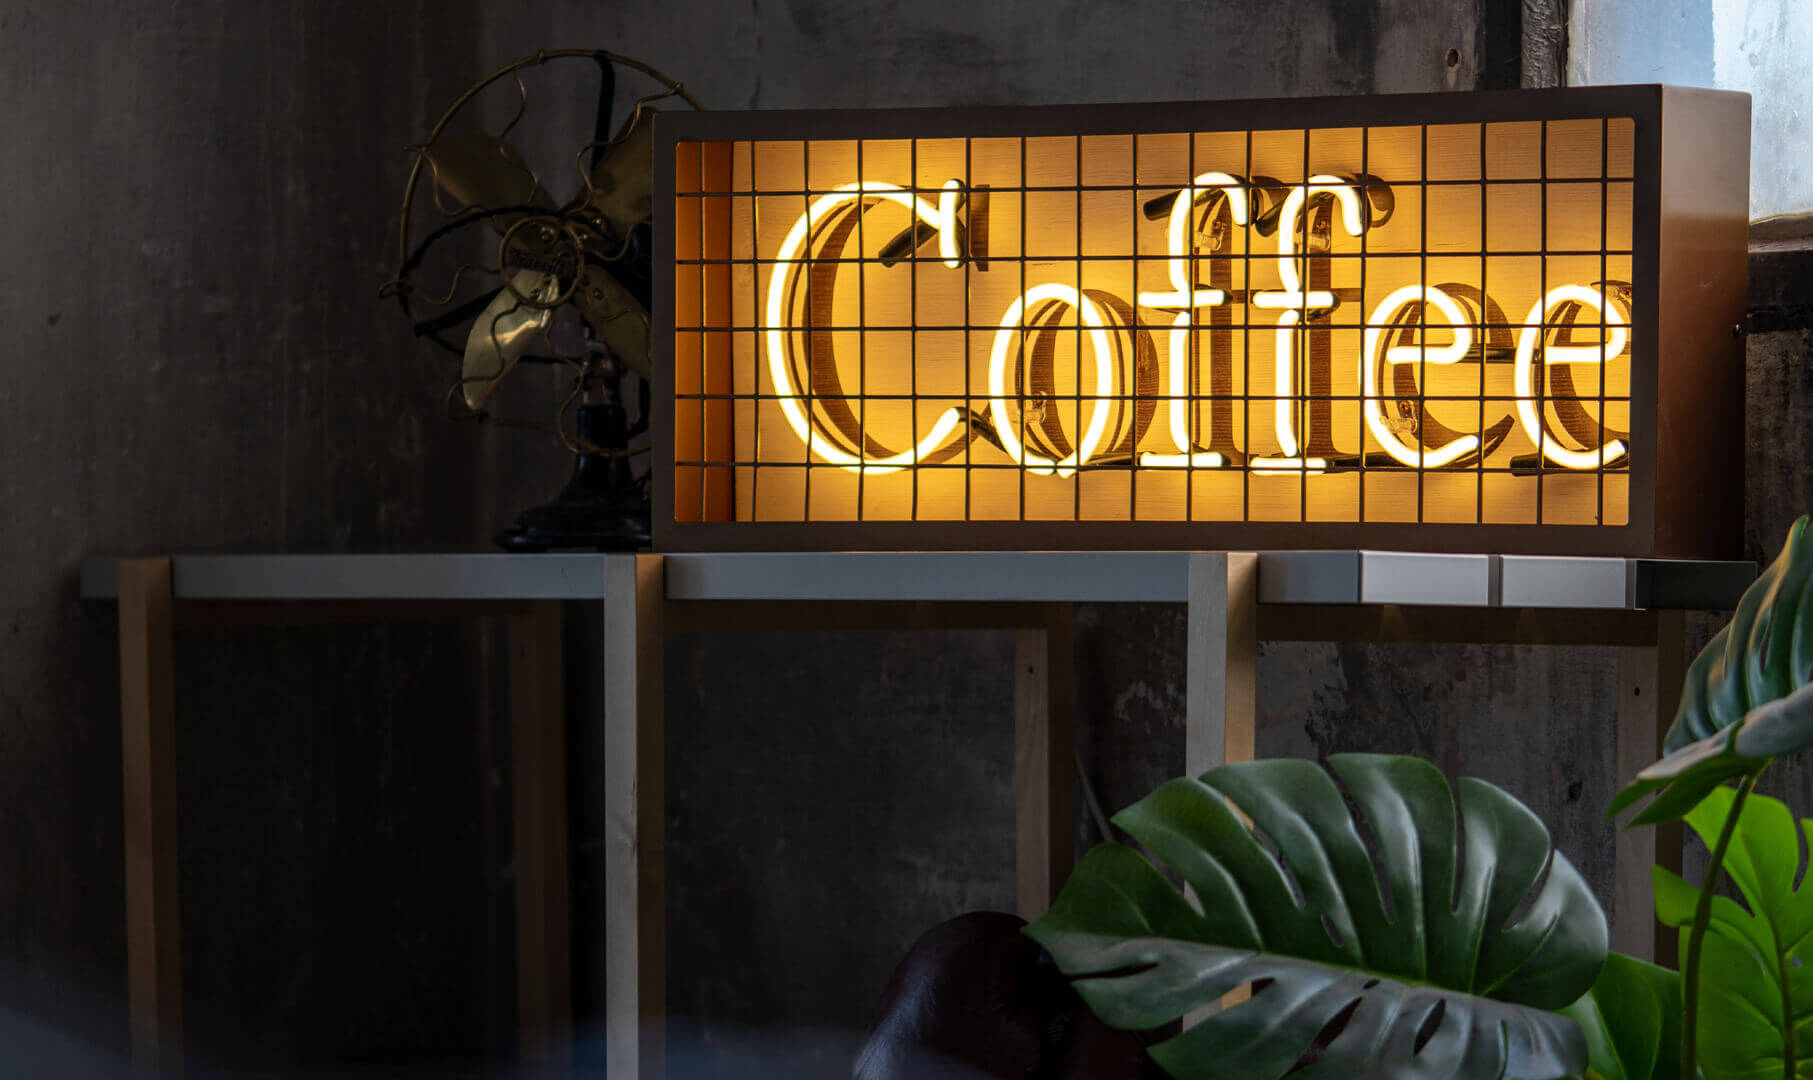 Kaffee-Neon - kaffee;neon-arrangement-von-cafes-neon-kaffee-ausstellungsraum-neon-order